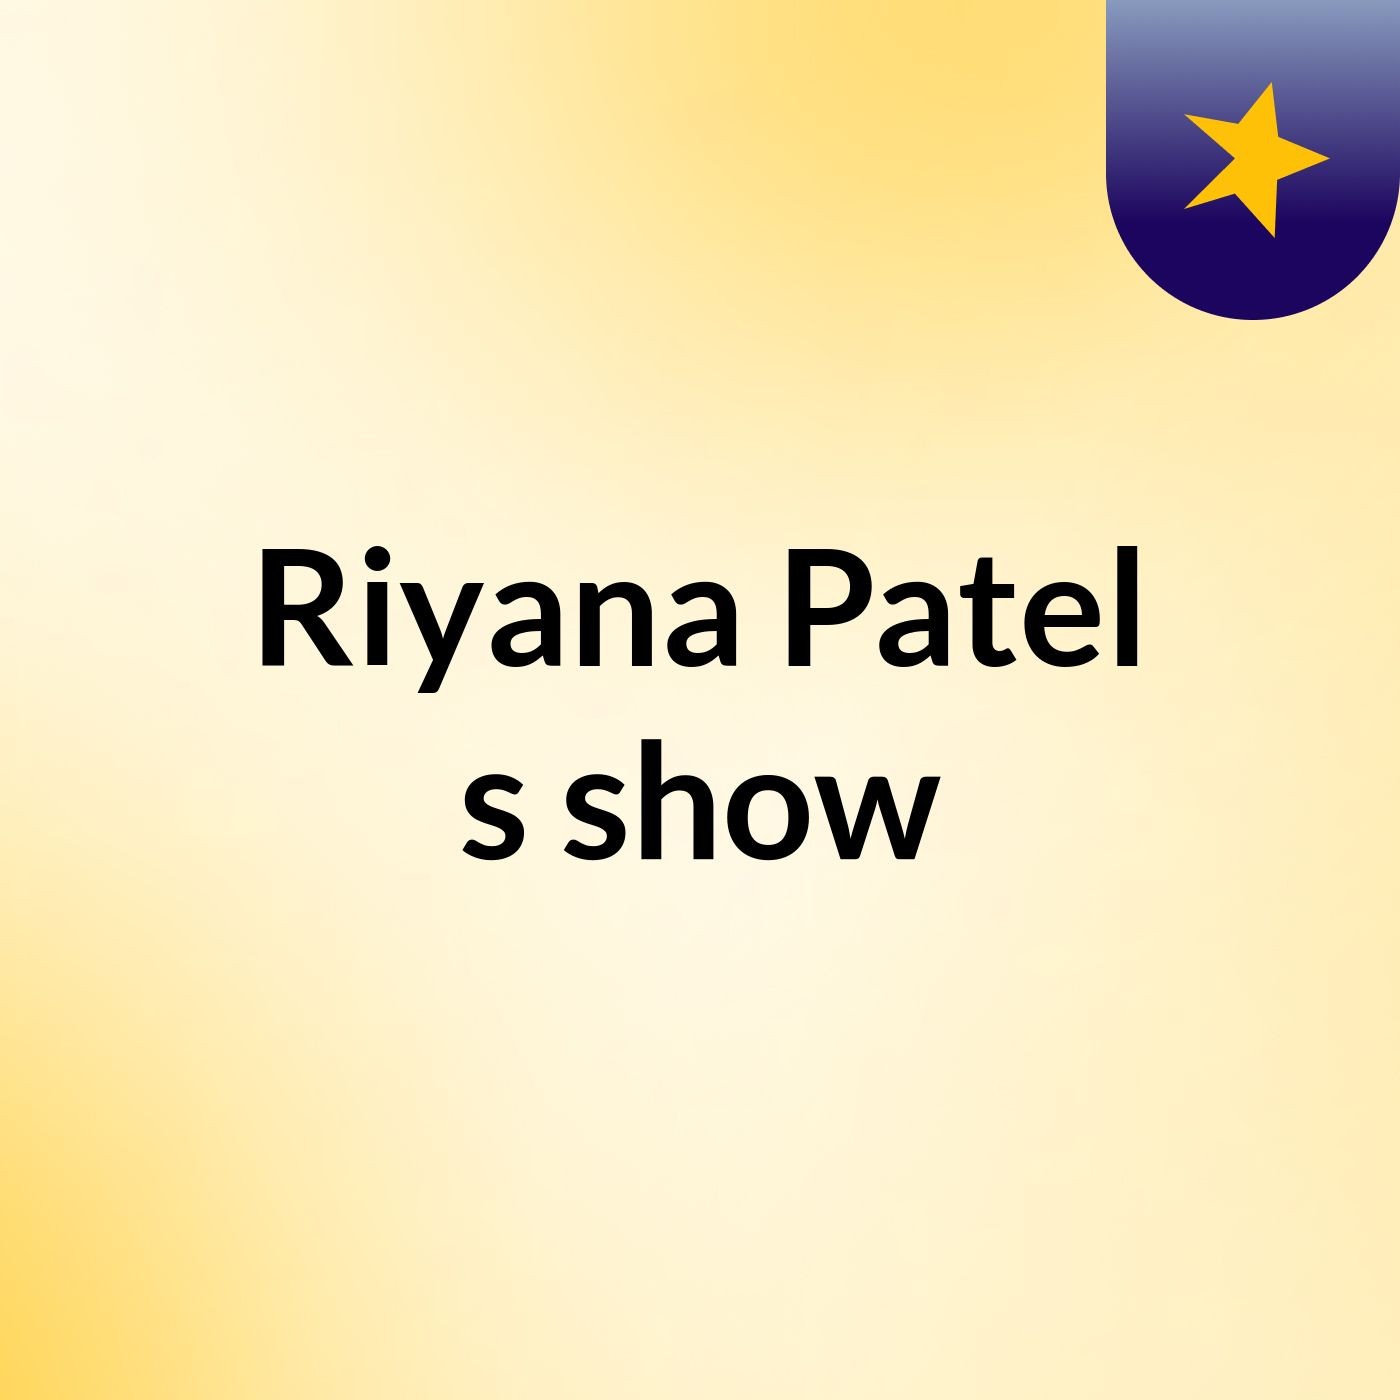 Riyana Patel's show